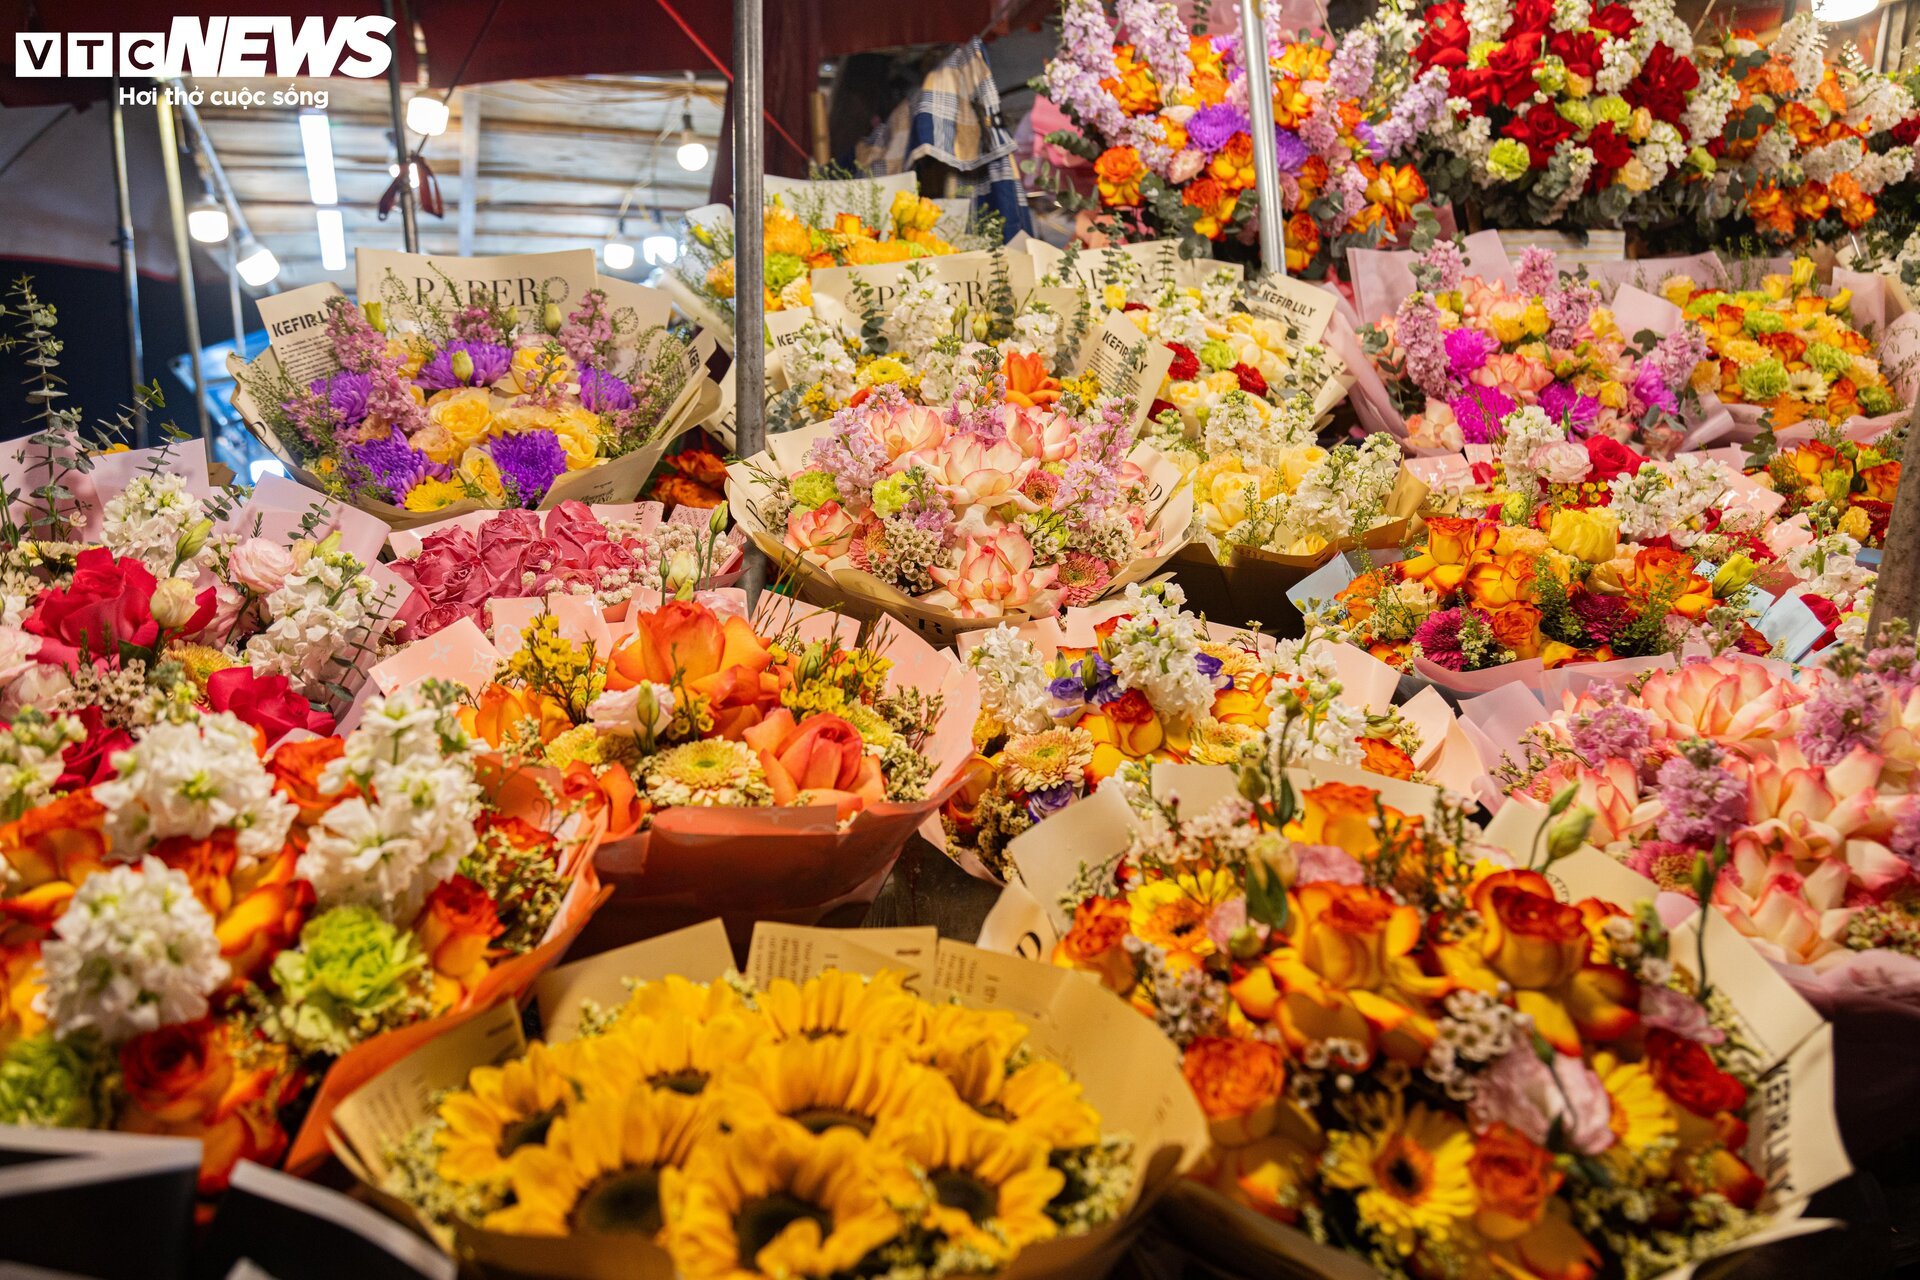 Chợ hoa tươi lớn nhất Hà Nội nhộn nhịp suốt đêm trước ngày 8/3 - Ảnh 10.